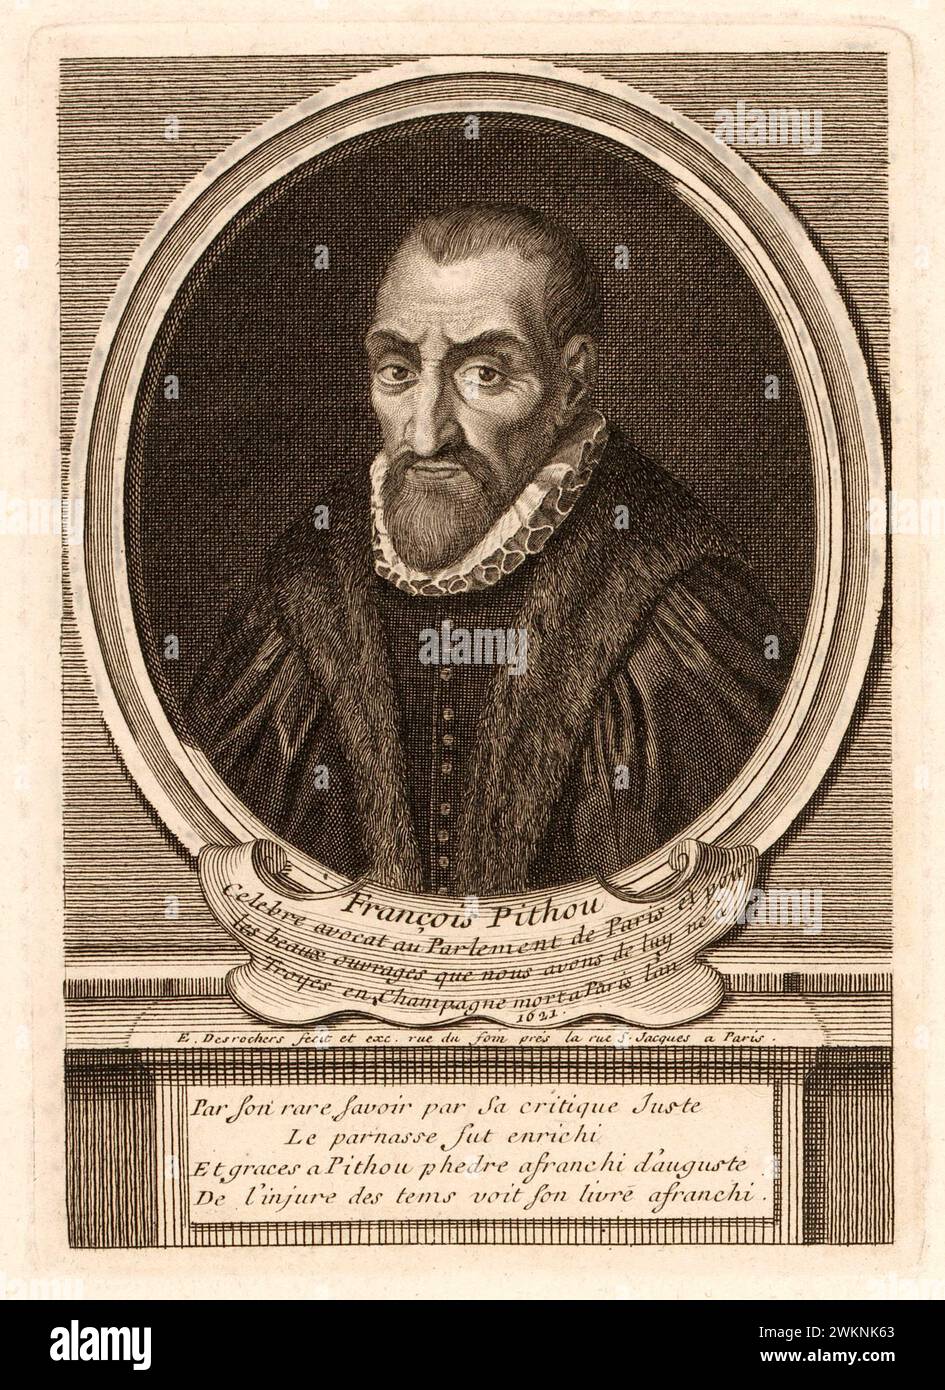 1585 c. , FRANKREICH : der italienische Jurist, Historiker und Schriftsteller Francois PITHOU ( 1543–1621), junger Mann von Pierre Pithou ( 1543–1596 ). Porträt von Etienne Desrochers , publiziert 1726 v. Chr. , Paris . - GESCHICHTE - FOTO STORICHE - HISTORIAN - STORICO - SCRITTORE - WRITER - LETTERATURA - LITERATUR - giureconsulto - GIURISTA - LEGGE - LAY - nobili - nobiltà francese - französischer Adel - FRANCIA - INCISIONE - GRAVUR - ILLUSTRATION - ILLUSTRAZIONE - Kragen - Collare - Colletto - GORGIERA - pizzo - Spitze - Bart - barba -- Archivio GBB Stockfoto